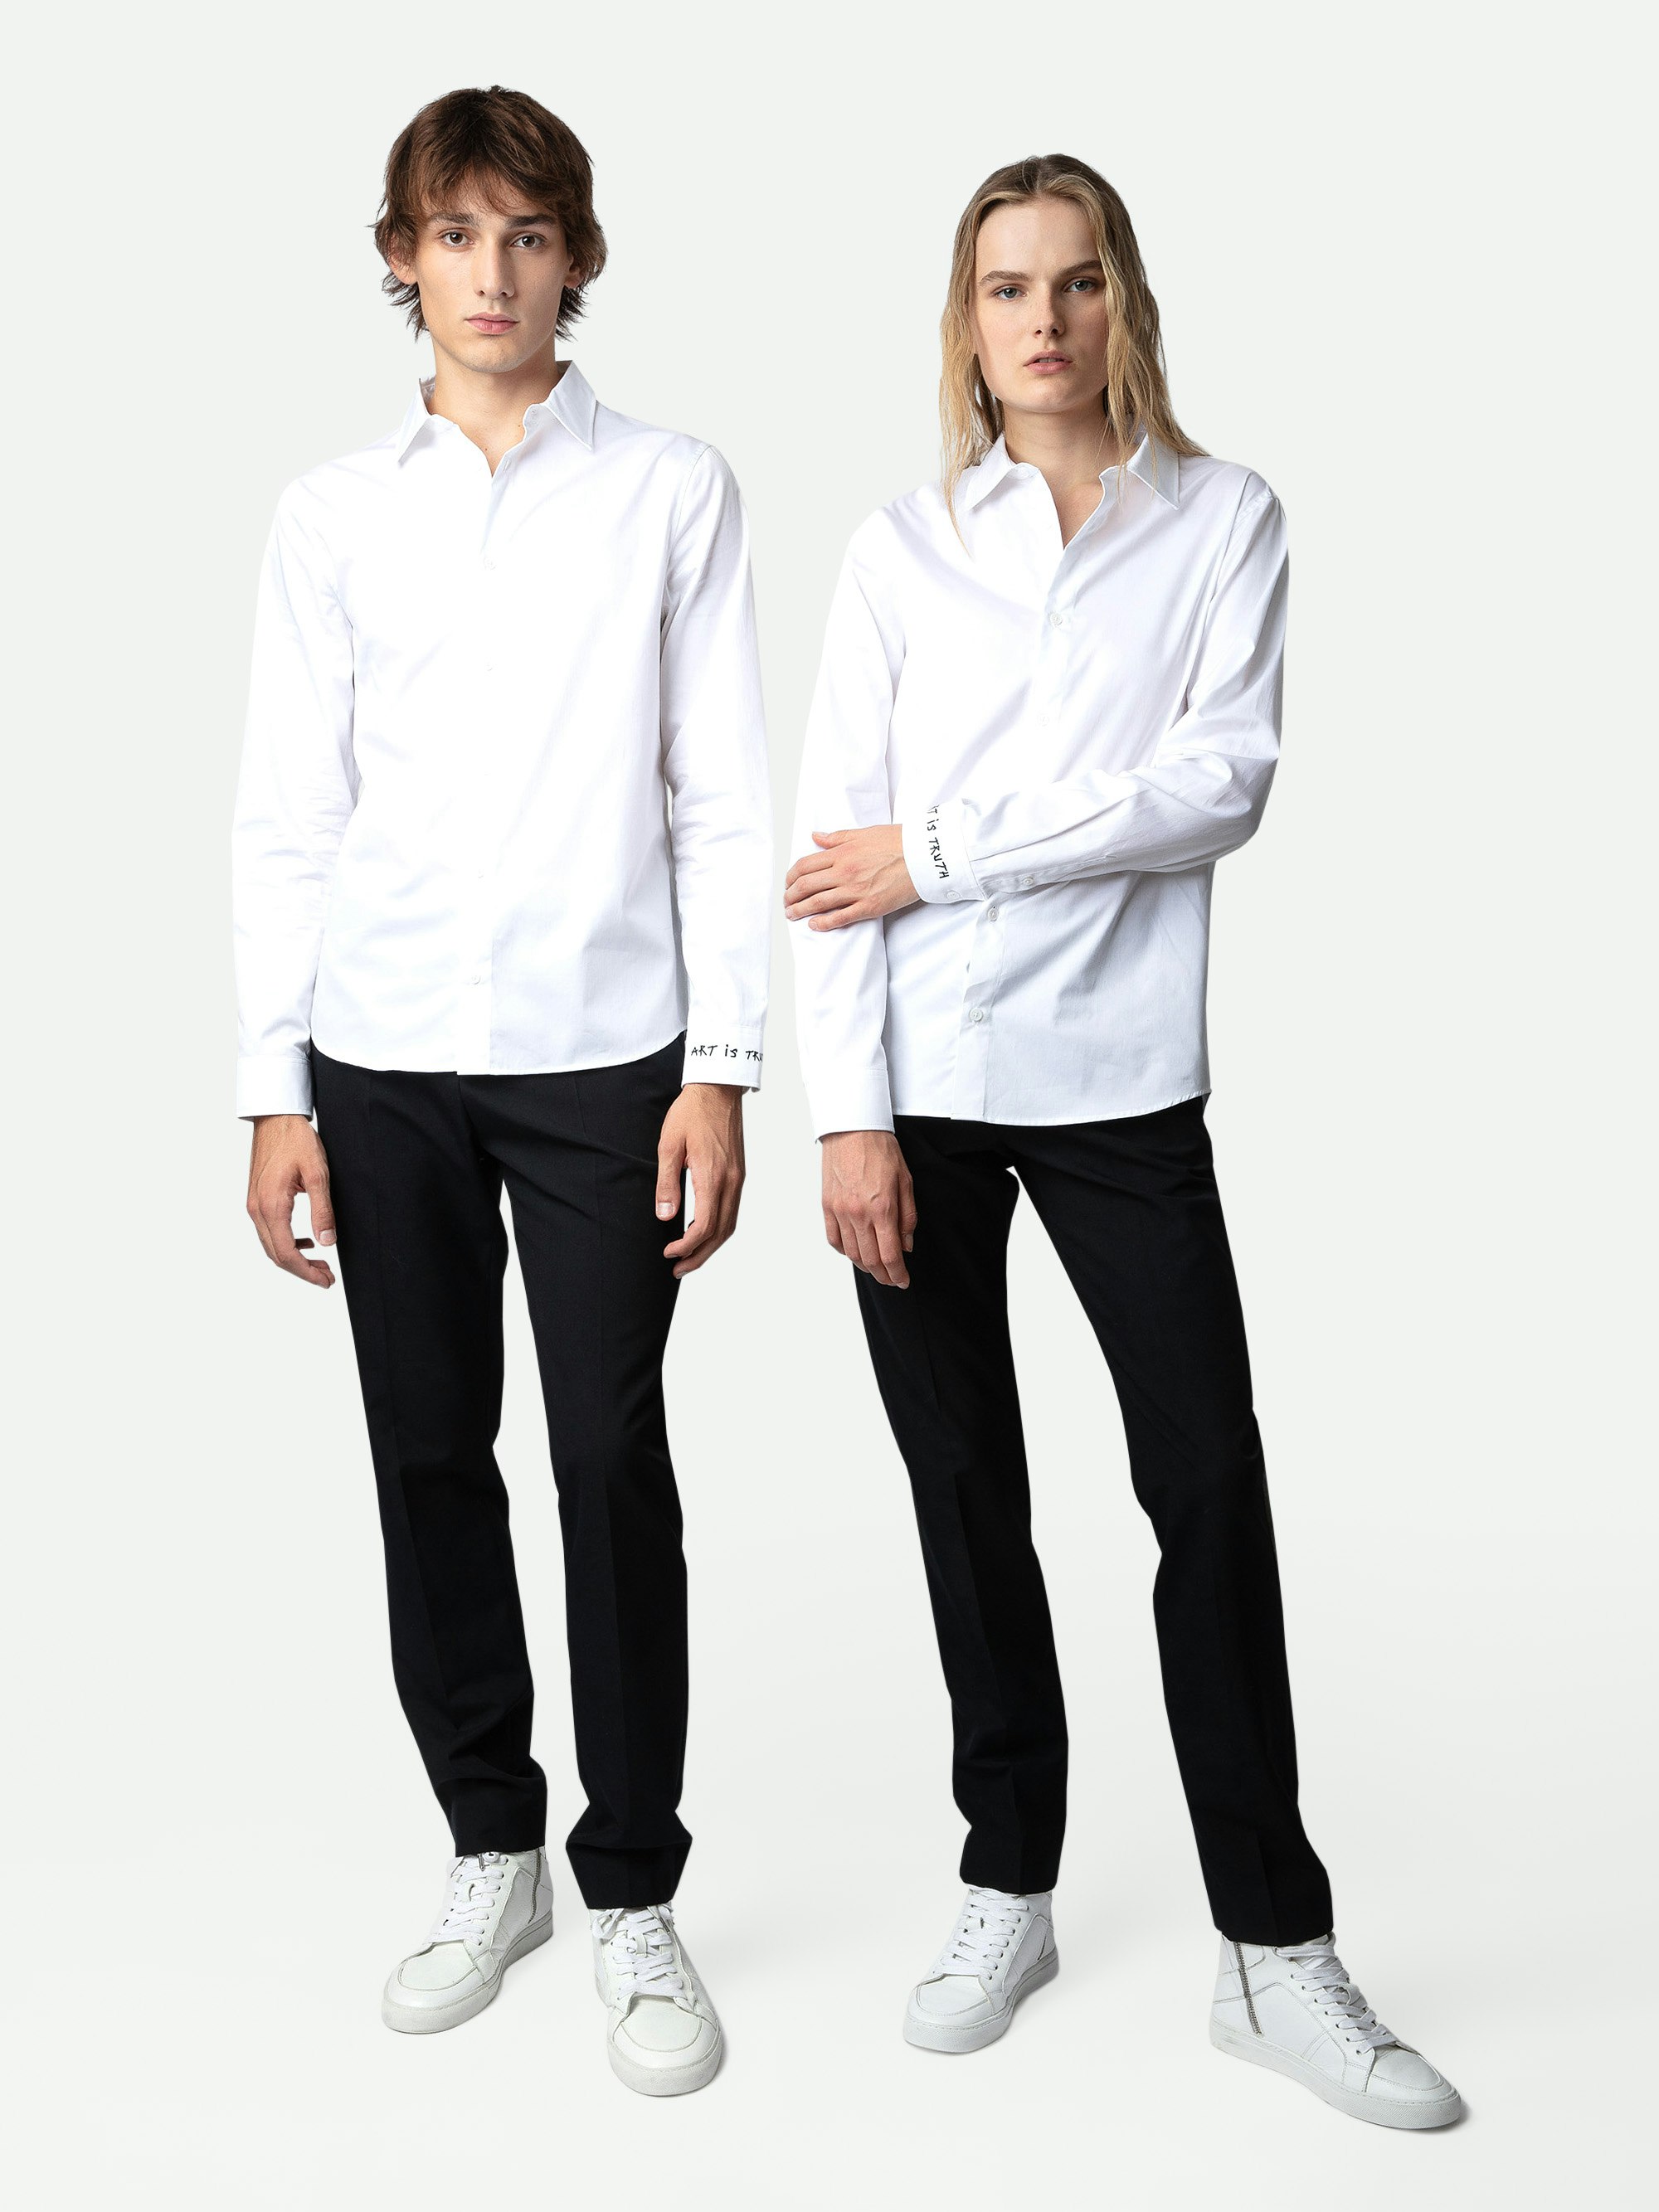 Camisa Sydney - Camisa unisex de algodón en color blanco con bordado «Art Is Truth» en el puño derecho.